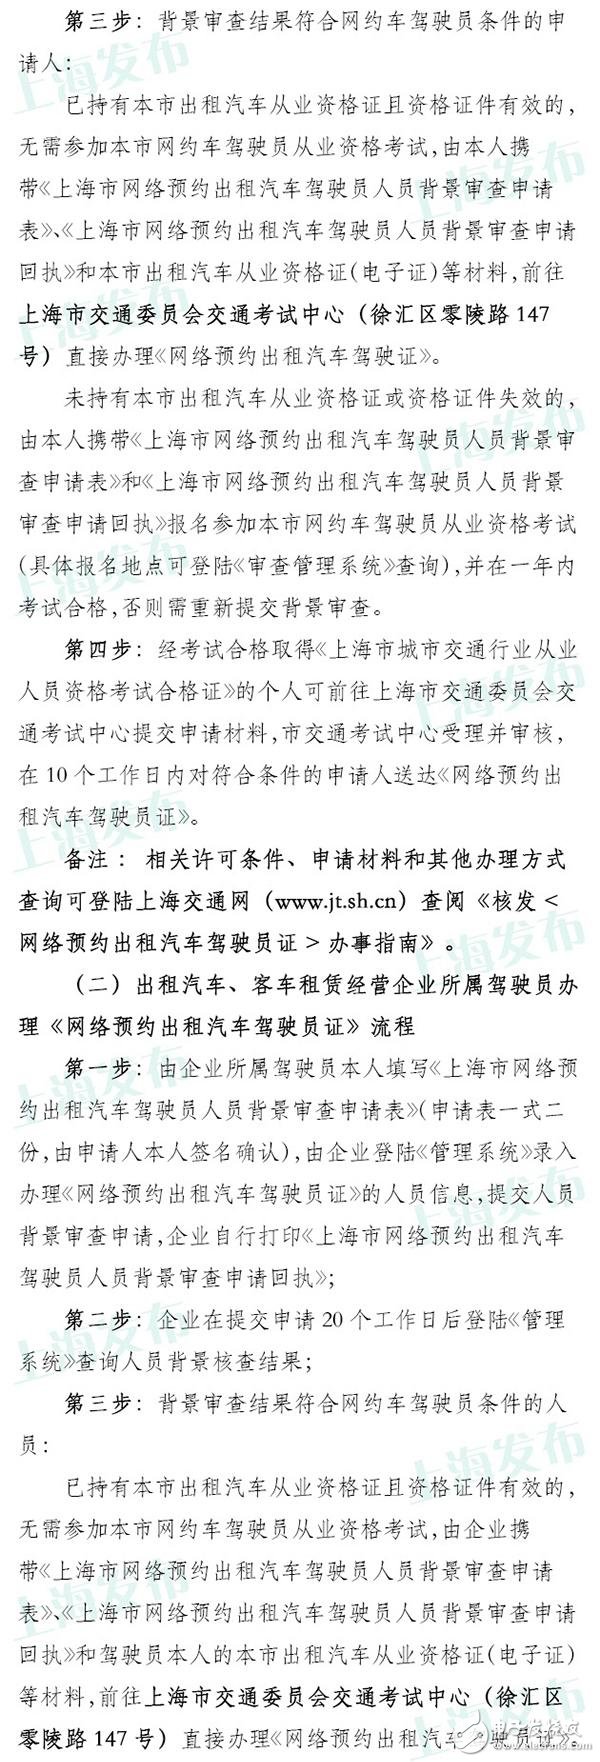 上海网约车申请今日已开放 具体流程公布无从业资格需考试,上海网约车申请今日已开放 具体流程公布无从业资格需考试,第3张